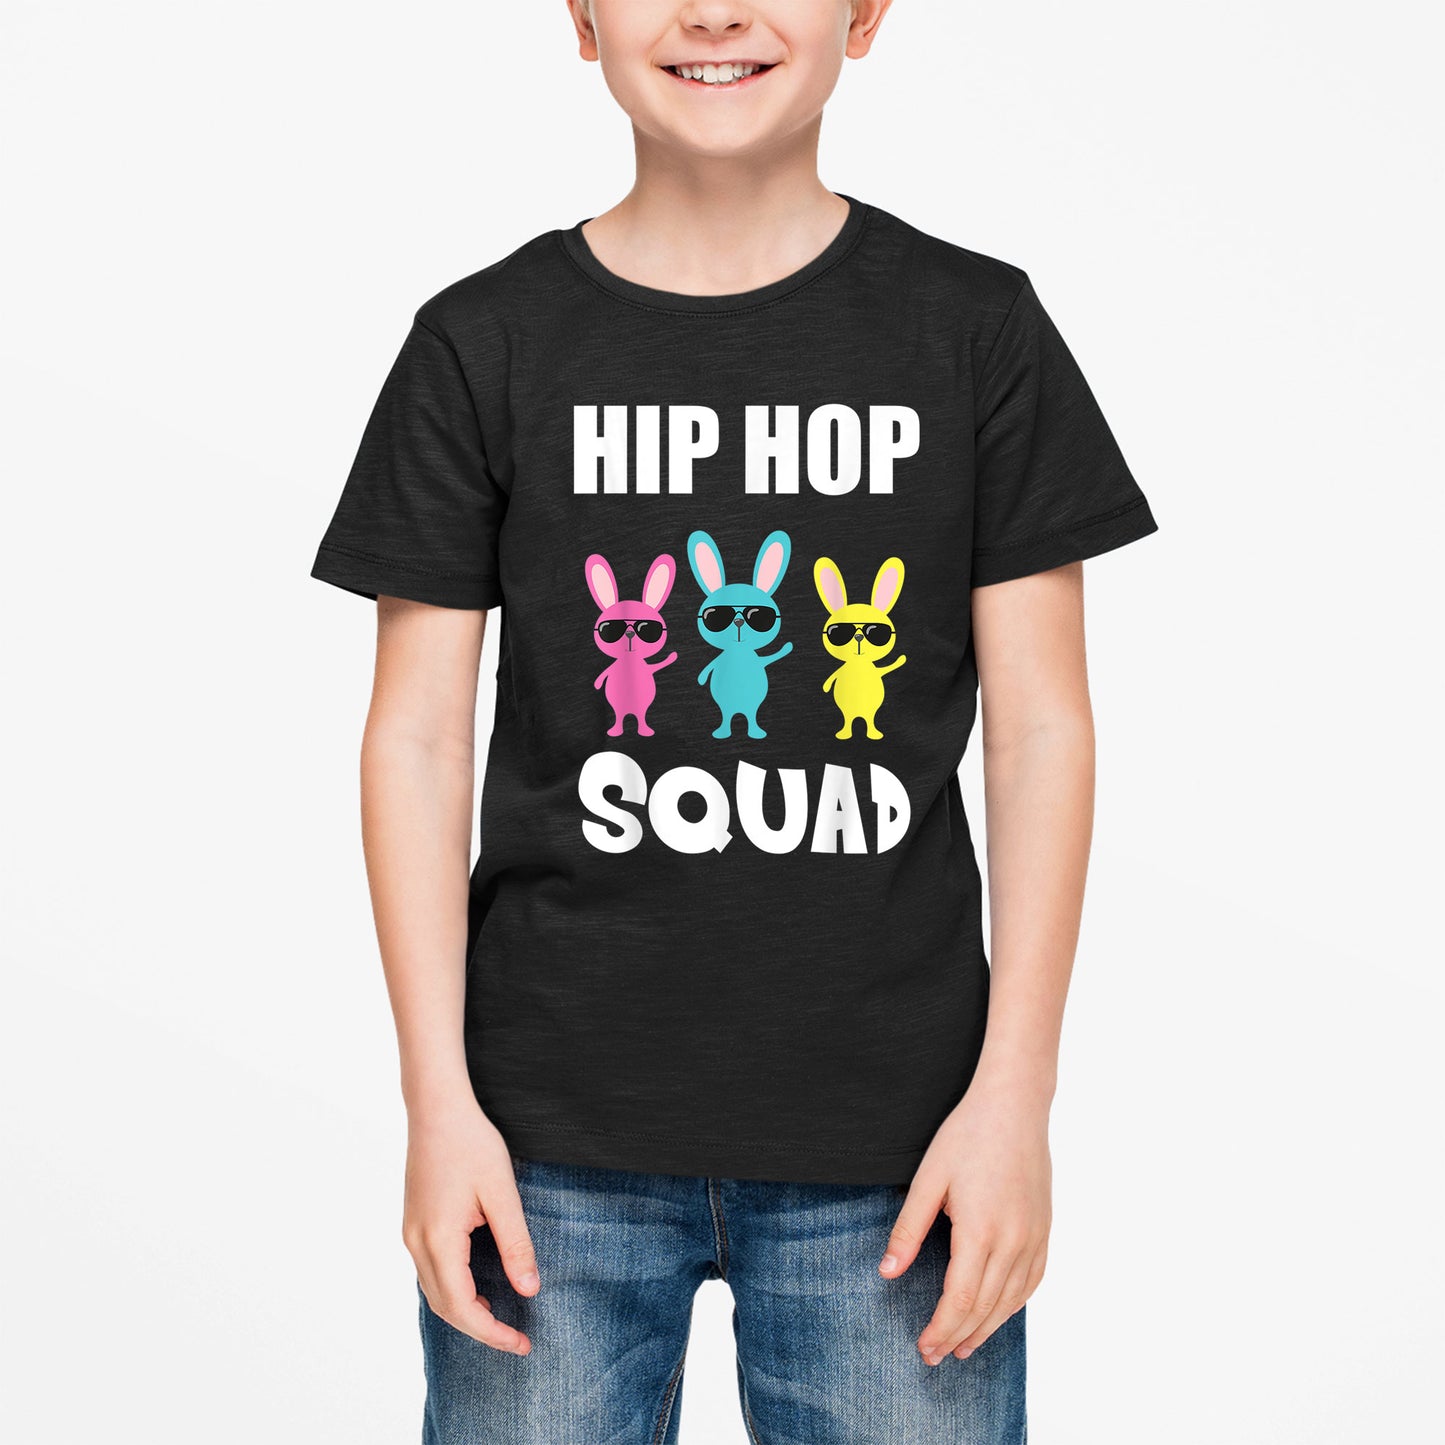 Hip Hop Squad Easter Shirt, Girls Boys Easter Shirt, Easter Gifts For Kids, Easter Gifts For Toddlers